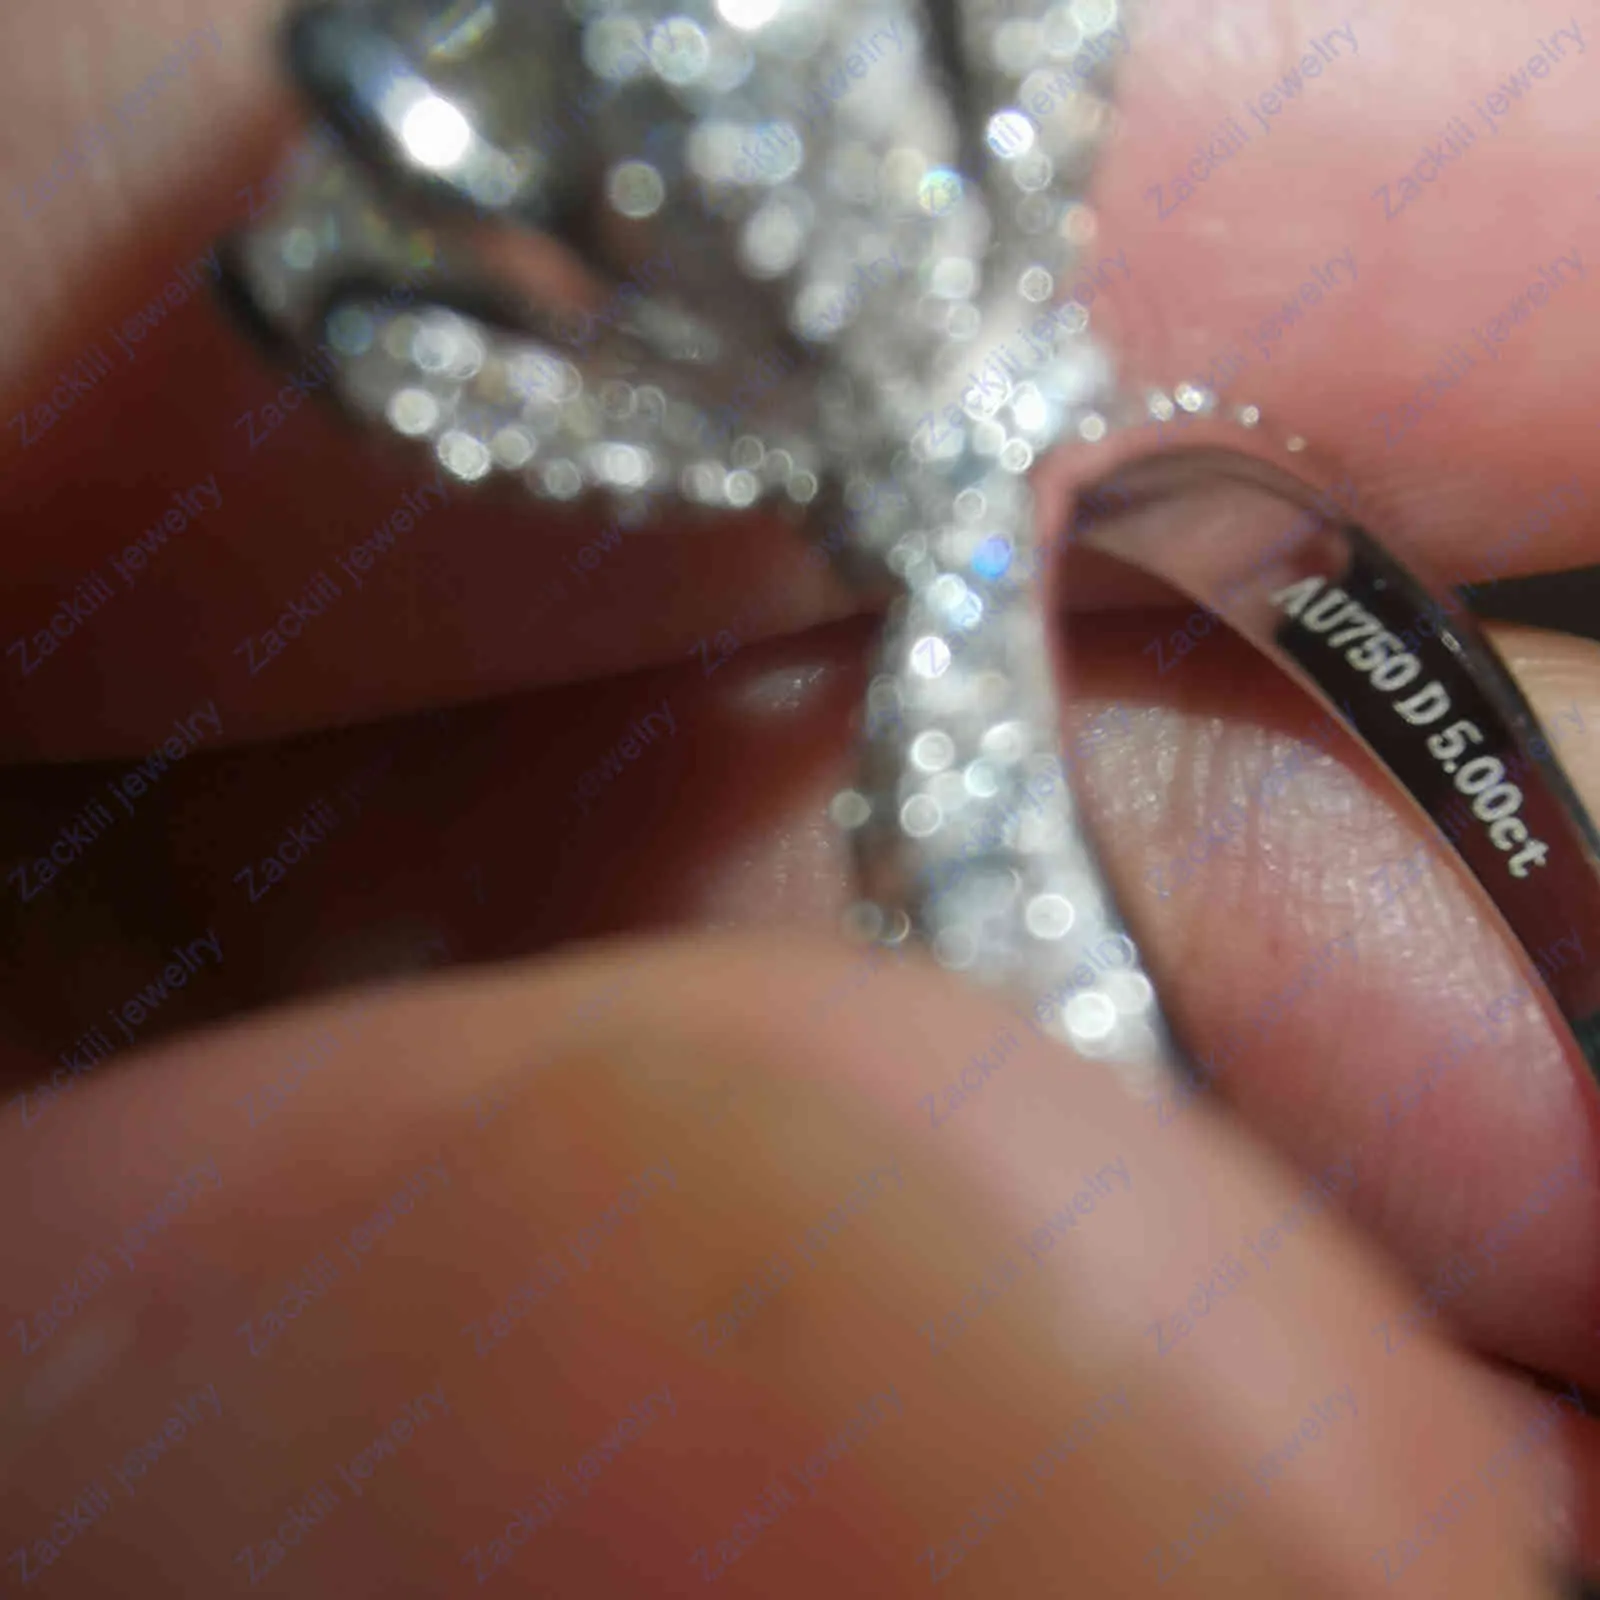 Aangepaste naam Ceried 5 karaat diamanten verlovingsring vrouwen 14k wit goud sterling zilveren bruids moissanite ringen trouwband7534334